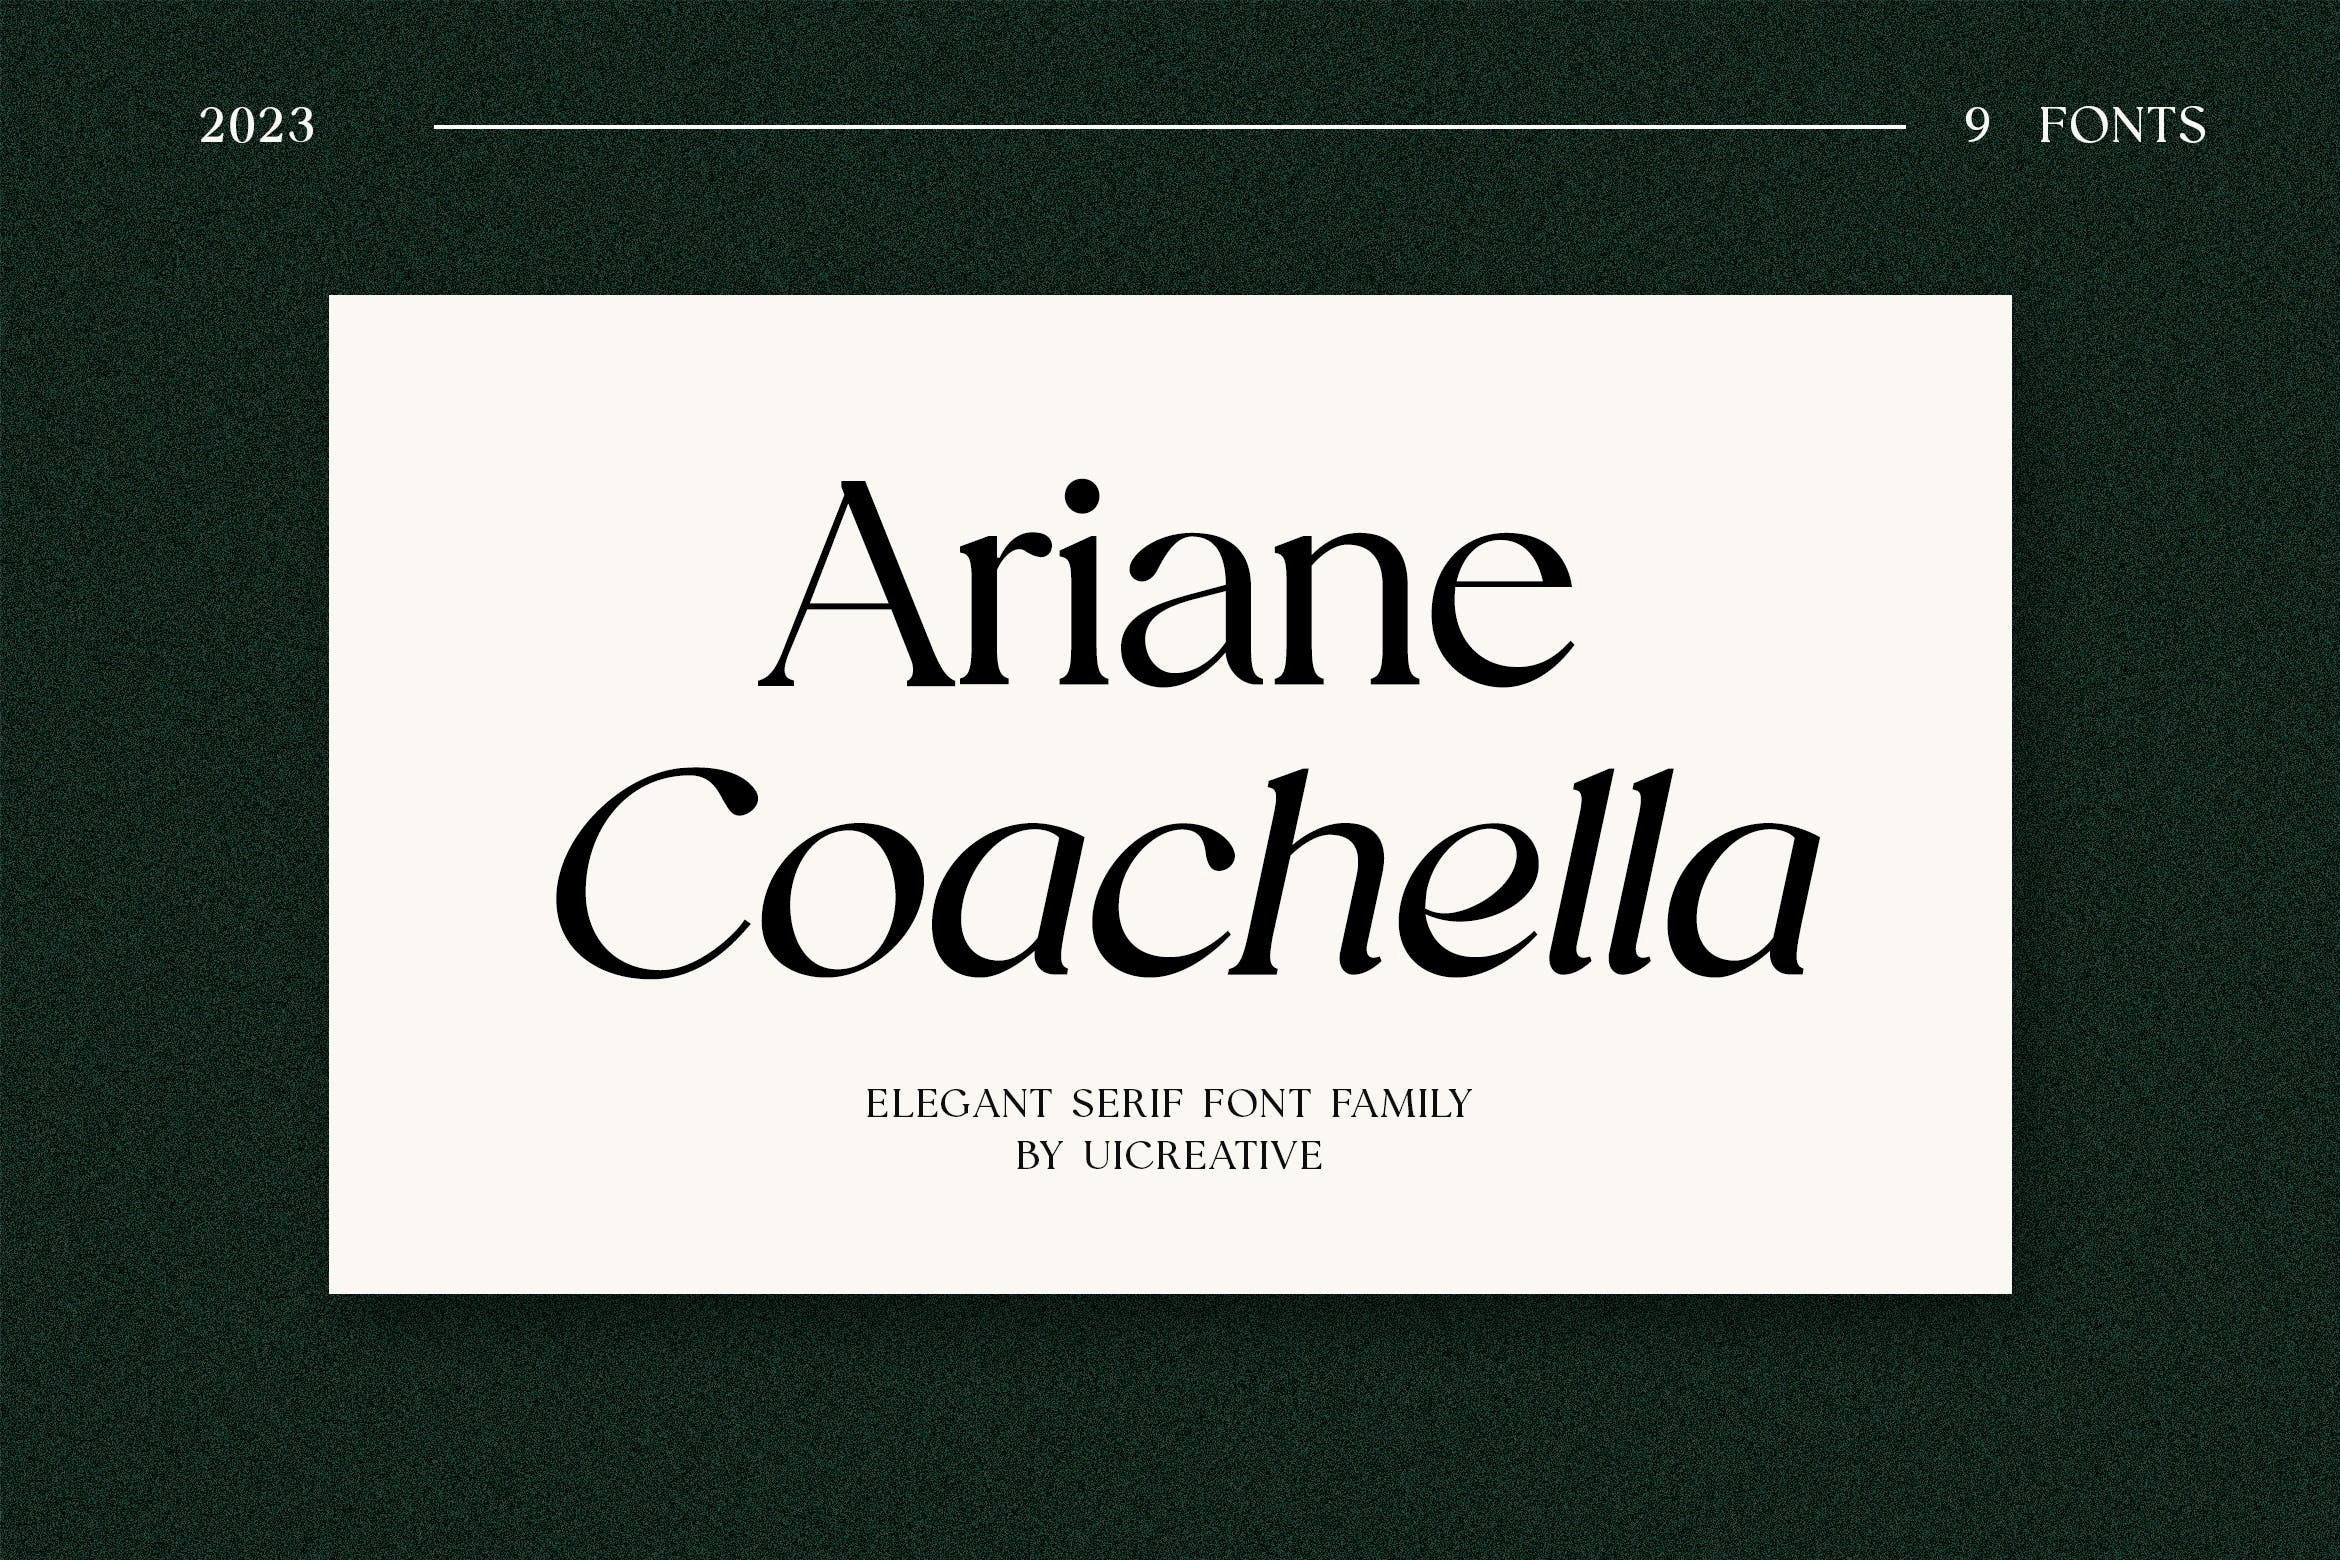 Ariane Coachella